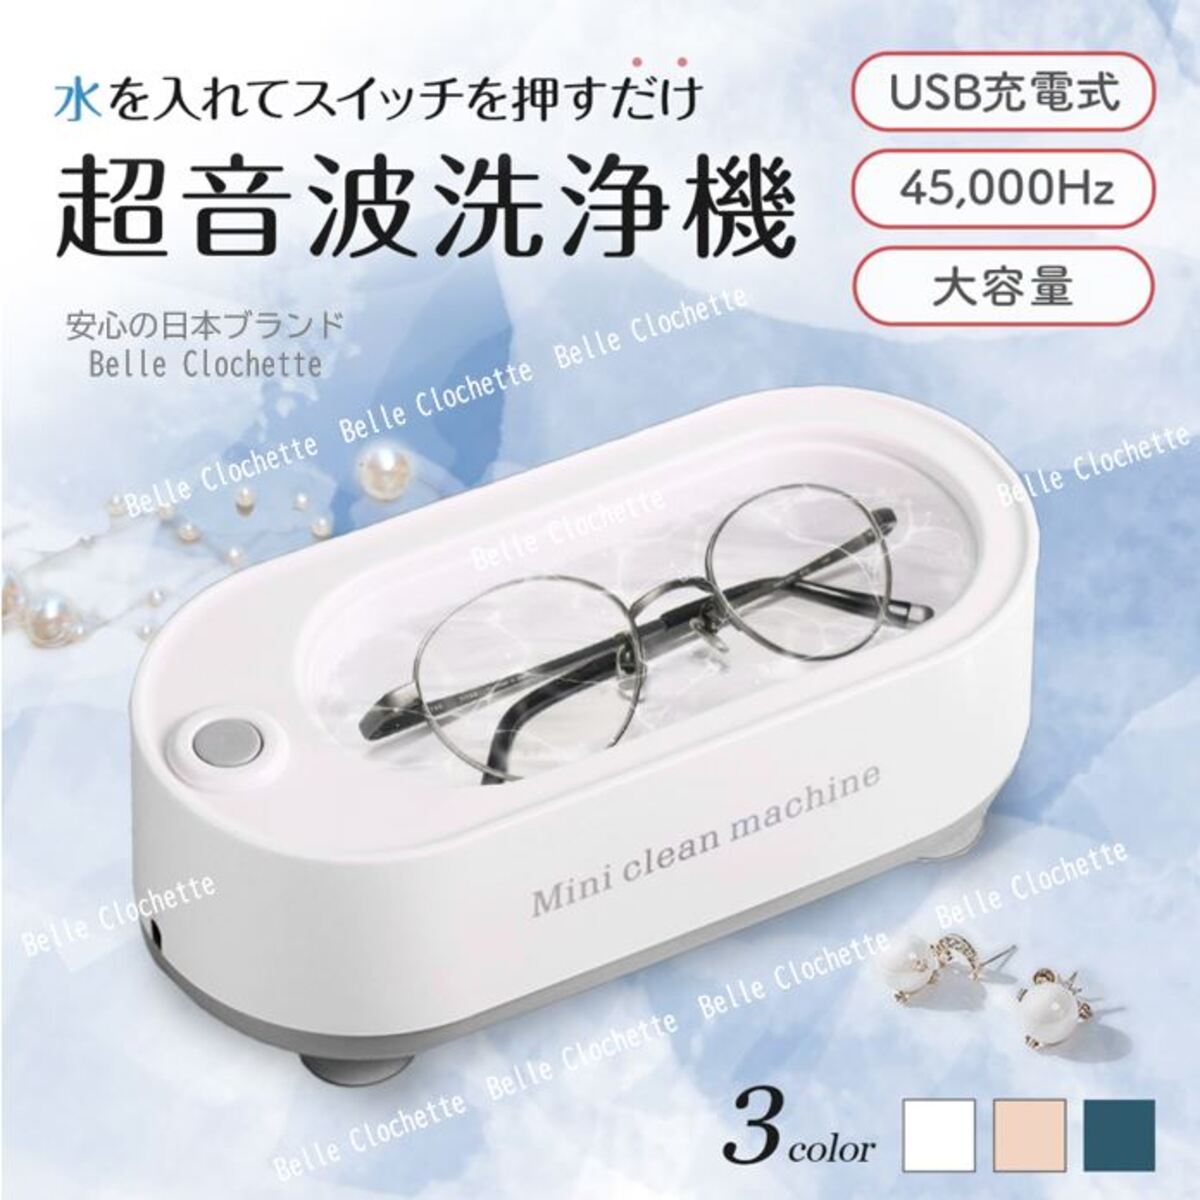 超音波洗浄機 メガネ クリーナー メガネ洗浄器 シンプル コンパクト ホワイト 45kHz 45000Hz 時計 眼鏡 入れ歯 アクセサリー  パワフル洗浄 USB給電